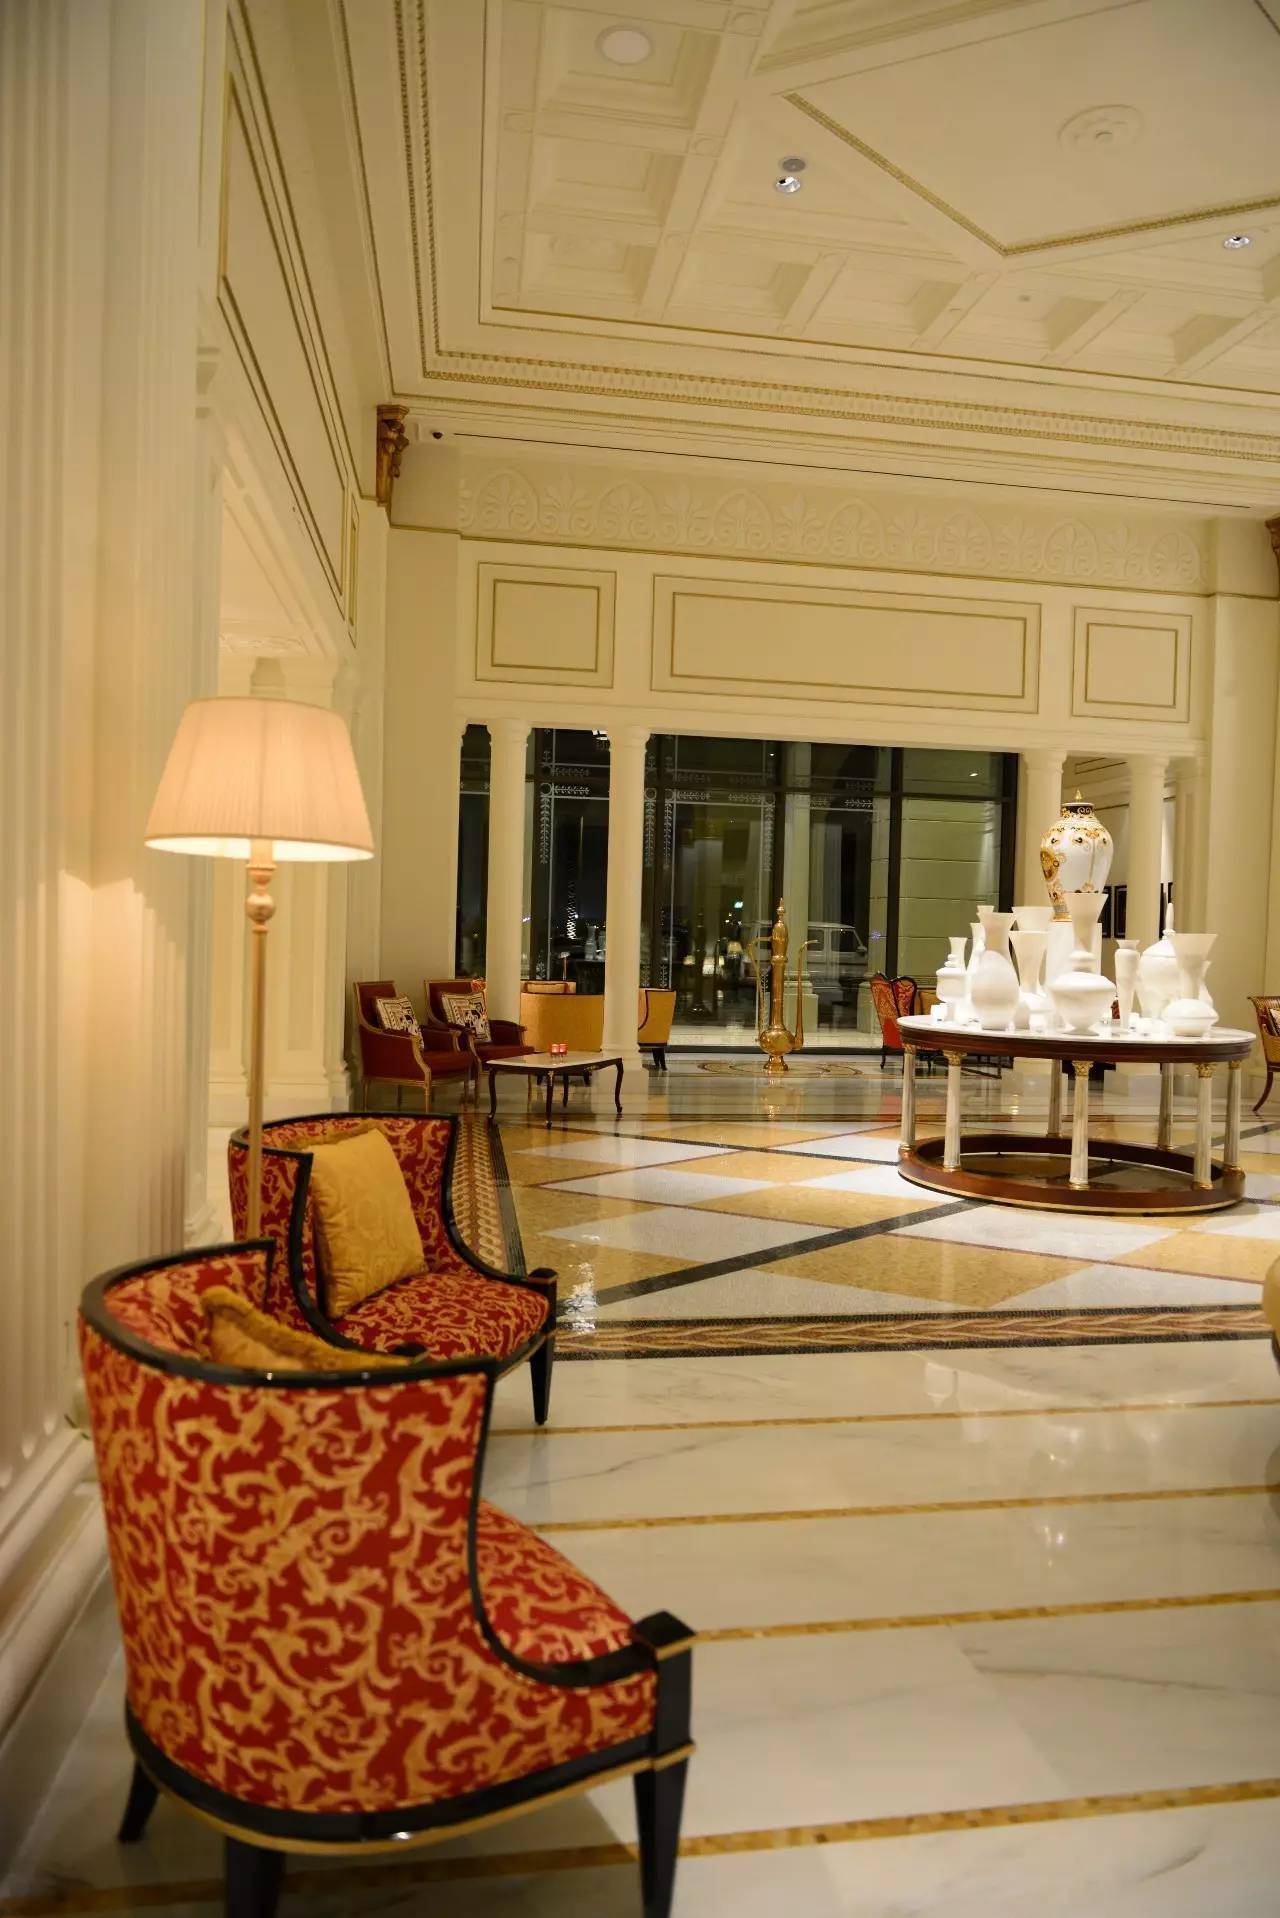 迪拜的新酒店 | 迪拜的设计师酒店 | 范思哲宫殿酒店